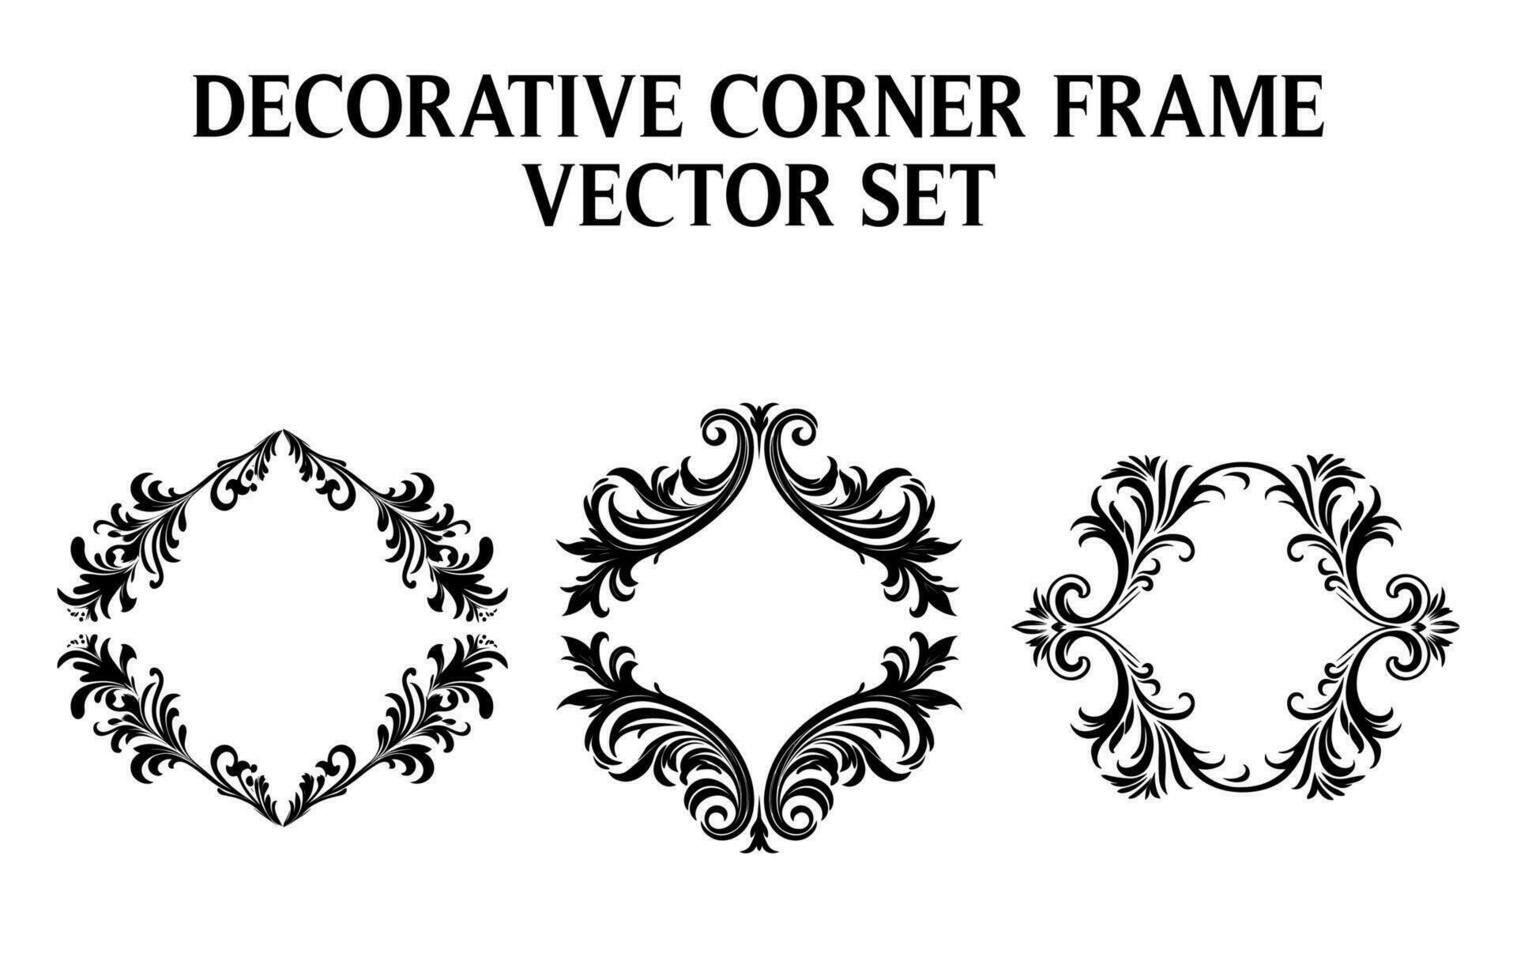 Vintage Ornamental corner border frame vector Bundle, Round vector ornamental Border Frame Set